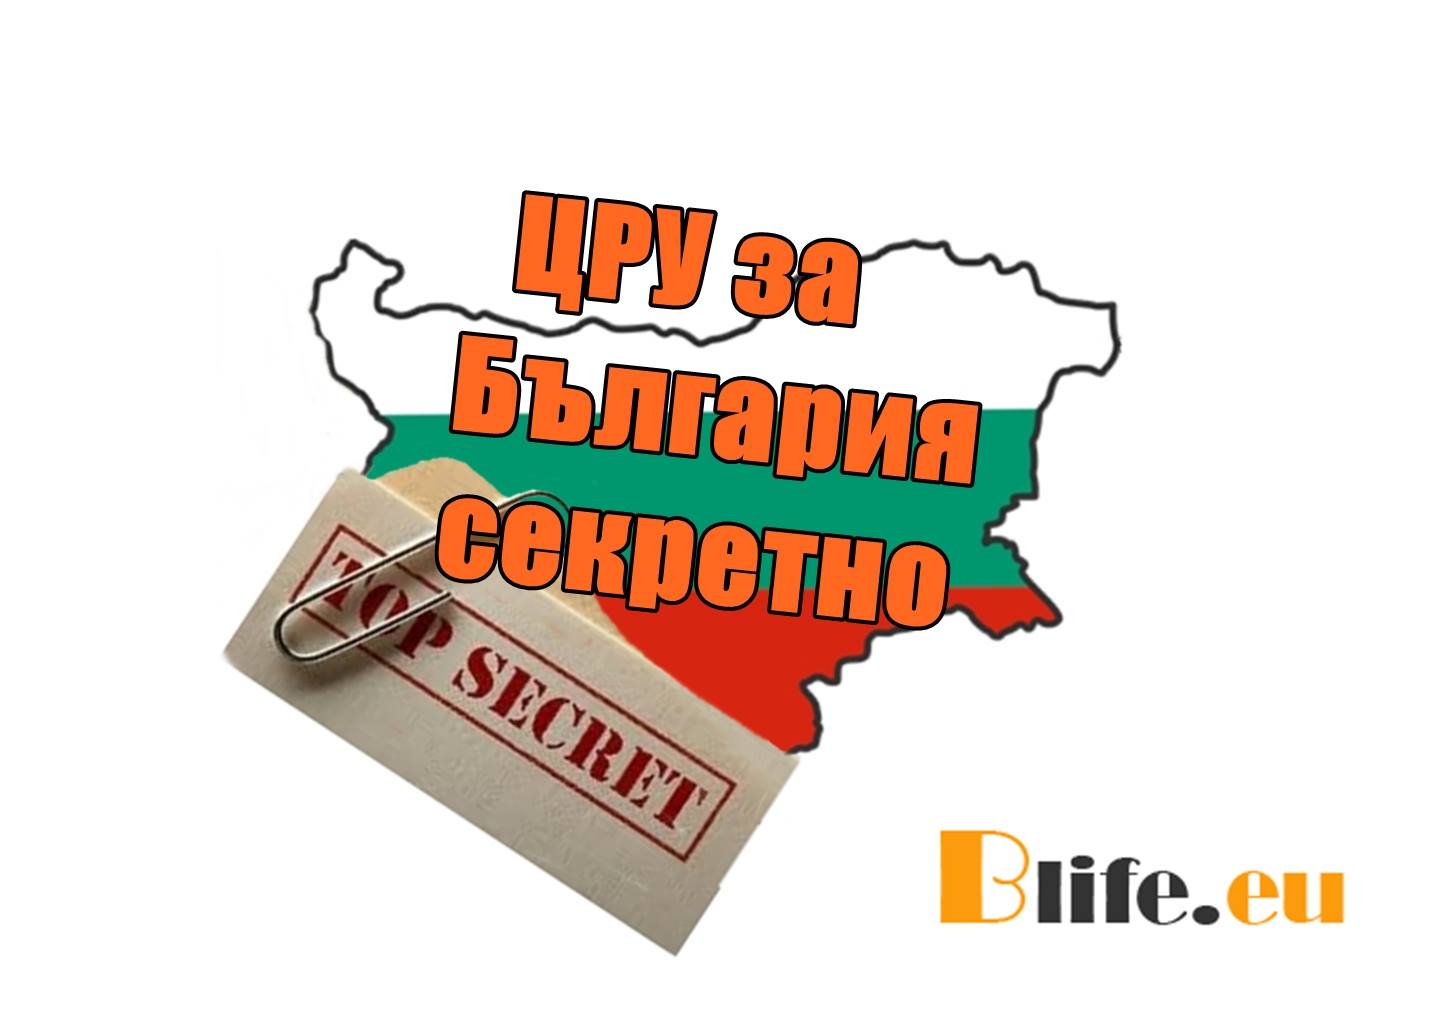 ЦРУ за България секретно